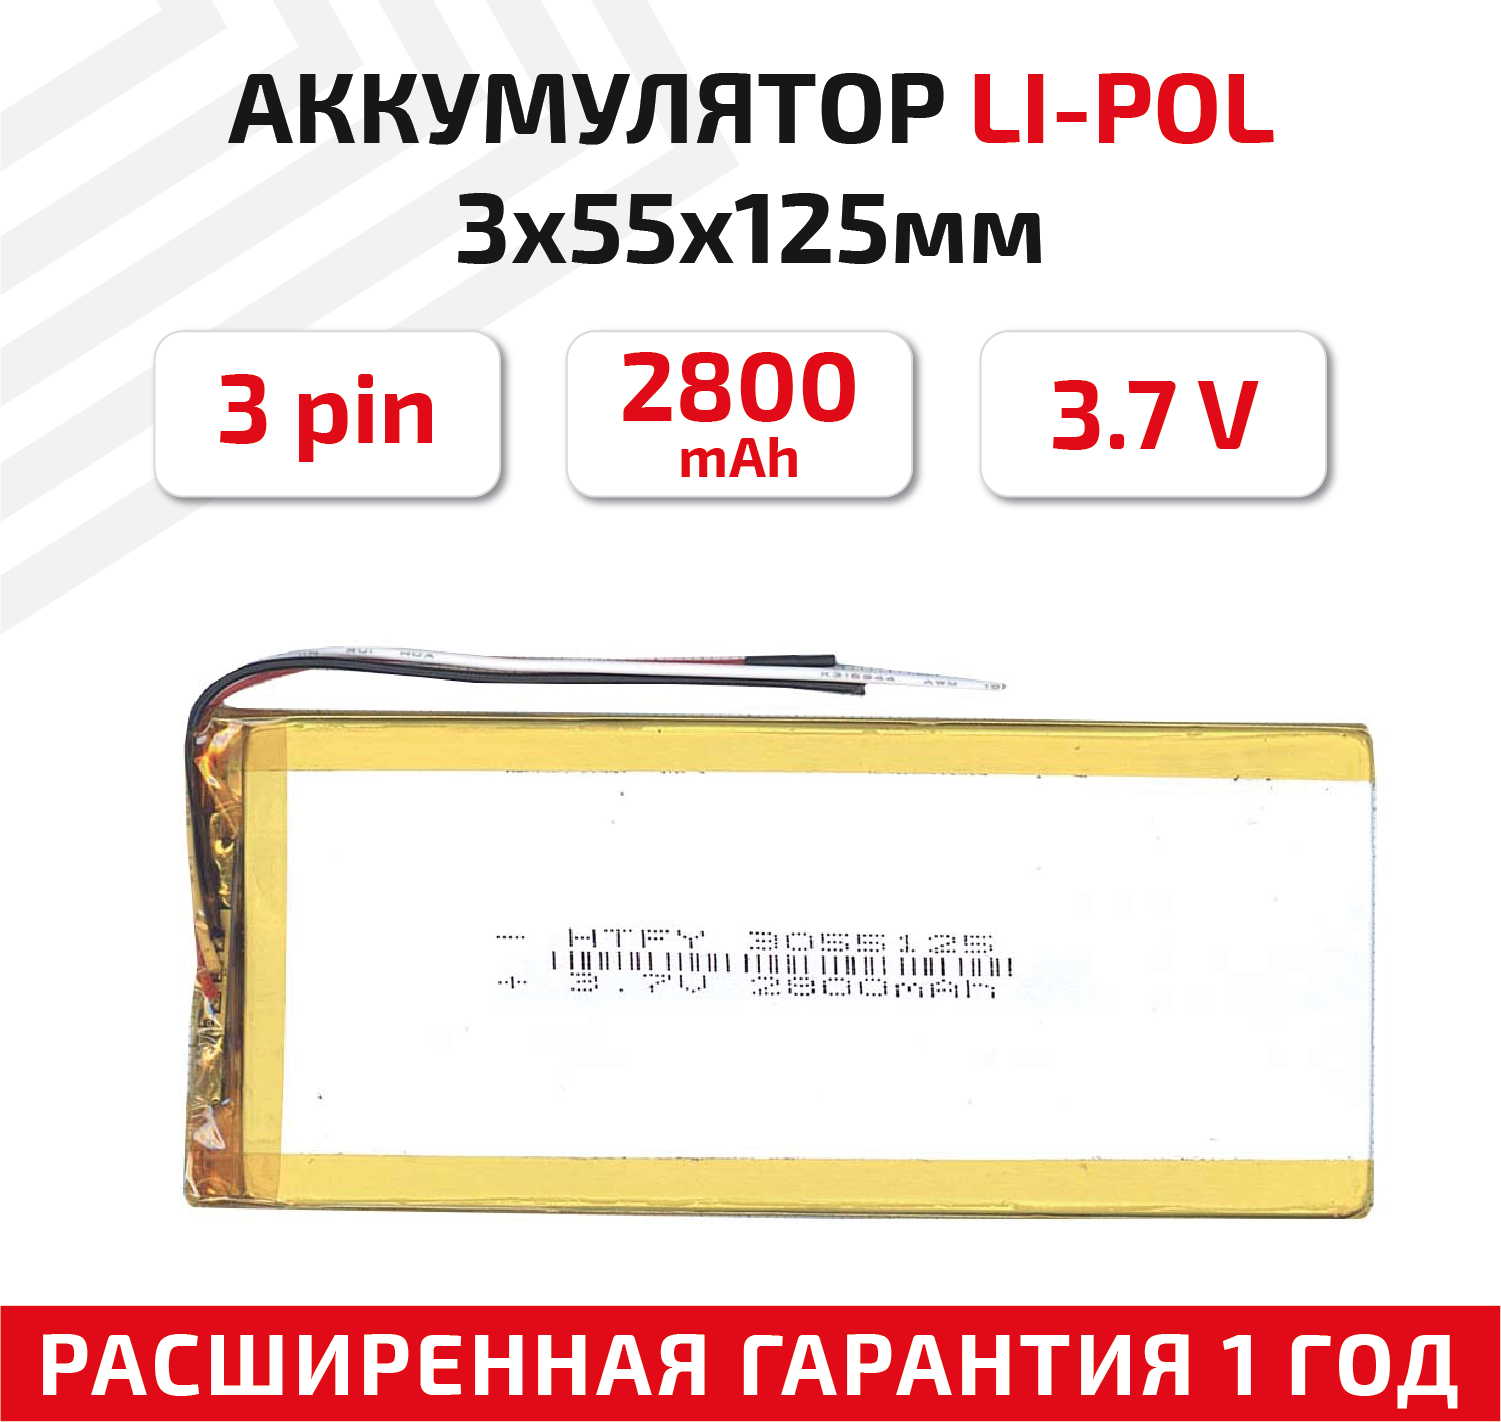 Универсальный аккумулятор (АКБ) для планшета, видеорегистратора и др, 3х55х125мм, 2800мАч, 3.7В, Li-Pol, 3-pin (на 3 провода)